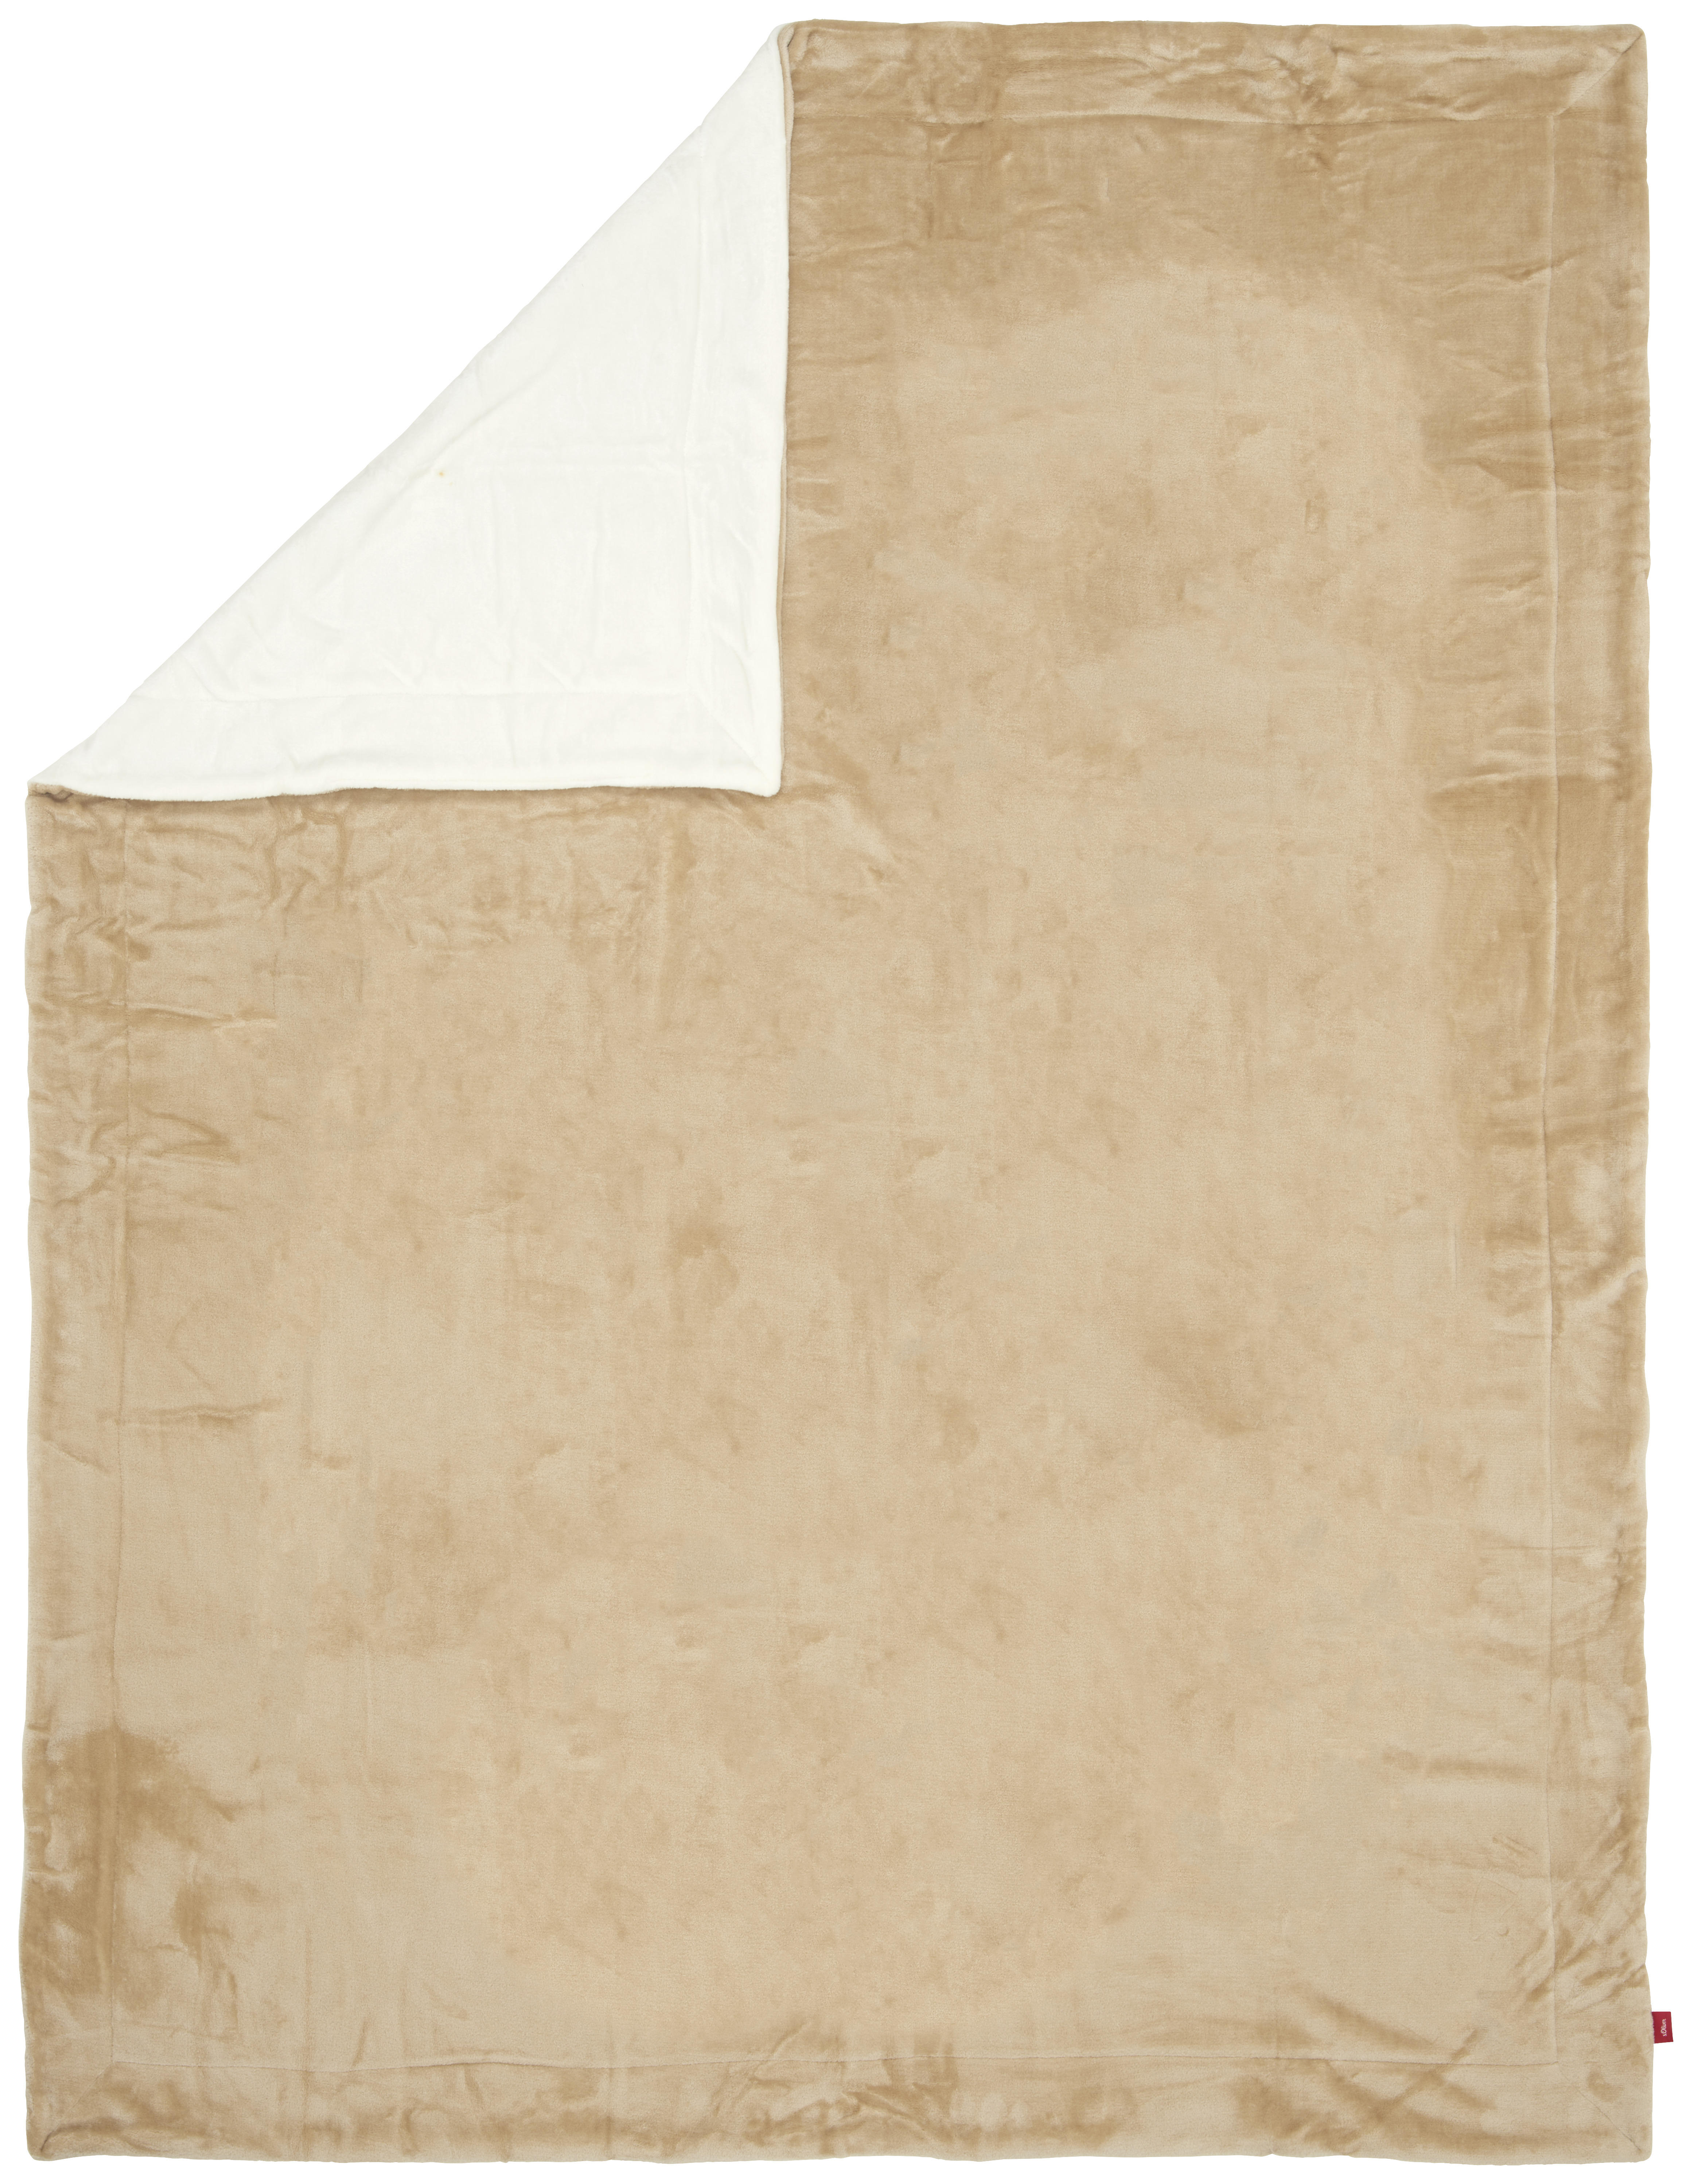 DECKE S.OLIVER 1280-300 150/200 cm Weiß, Beige  - Beige/Weiß, KONVENTIONELL, Textil (150/200cm) - S. Oliver